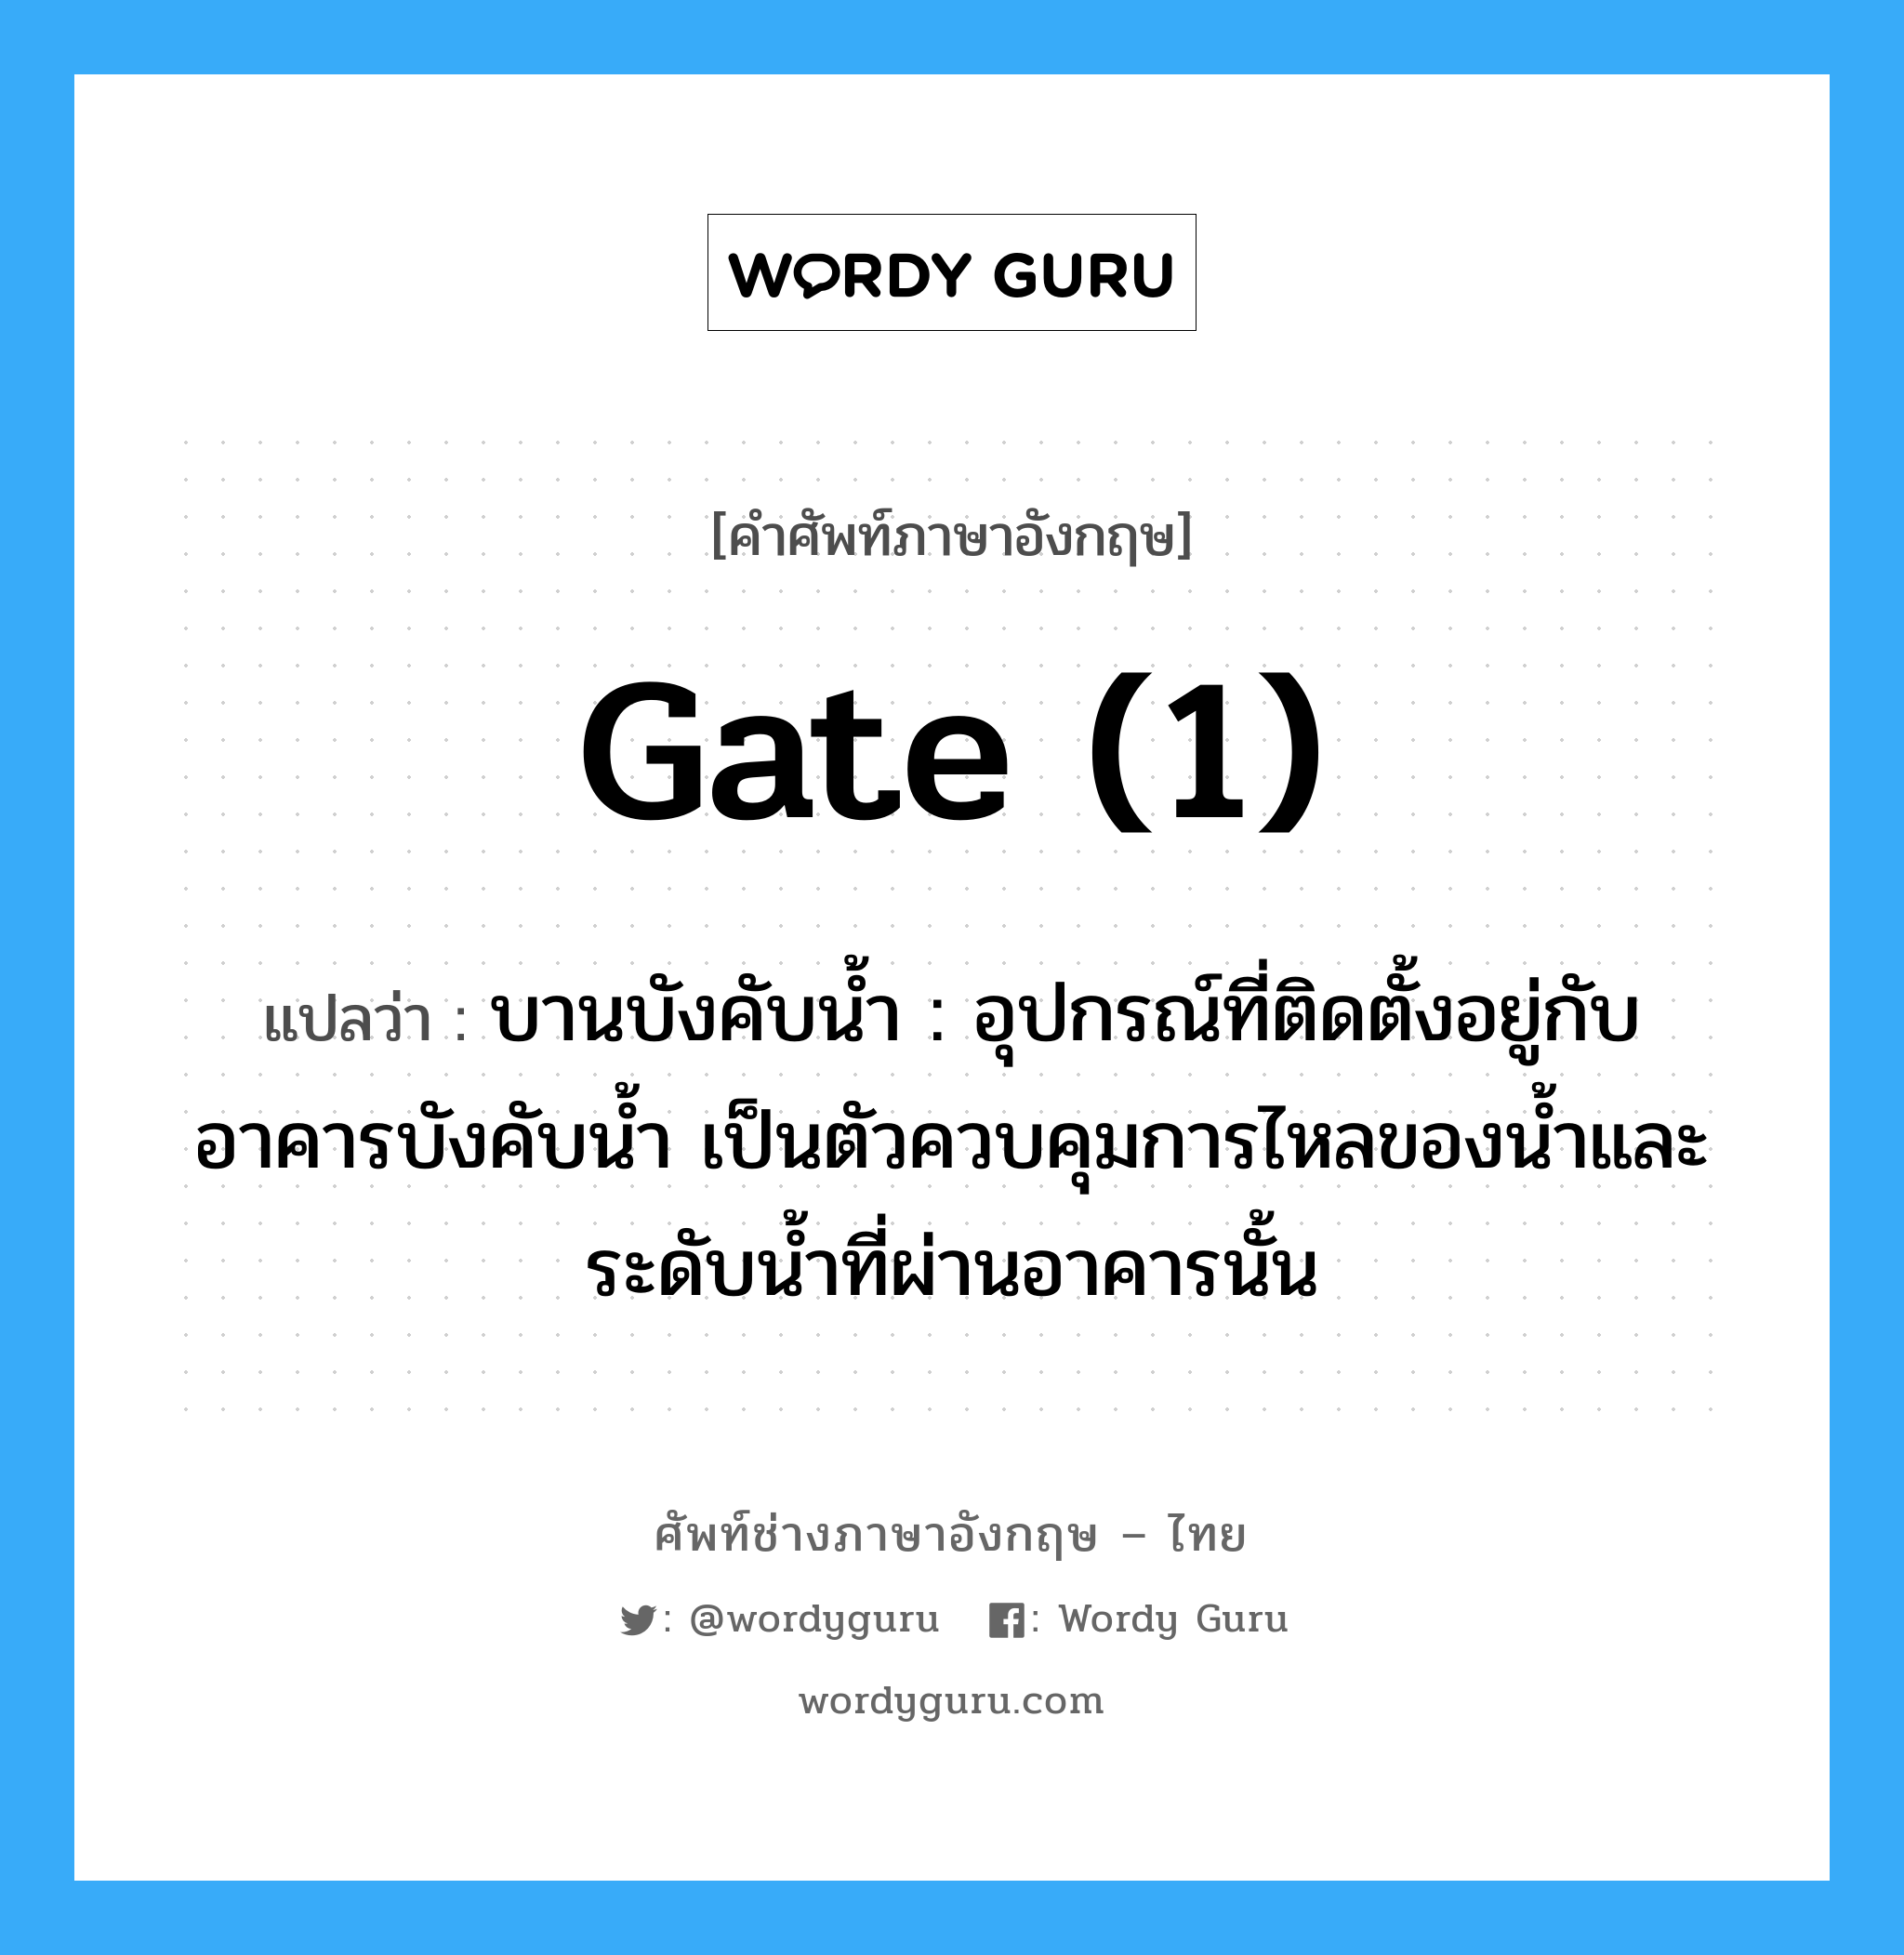 gate (1) แปลว่า?, คำศัพท์ช่างภาษาอังกฤษ - ไทย gate (1) คำศัพท์ภาษาอังกฤษ gate (1) แปลว่า บานบังคับน้ำ : อุปกรณ์ที่ติดตั้งอยู่กับอาคารบังคับน้ำ เป็นตัวควบคุมการไหลของน้ำและระดับน้ำที่ผ่านอาคารนั้น